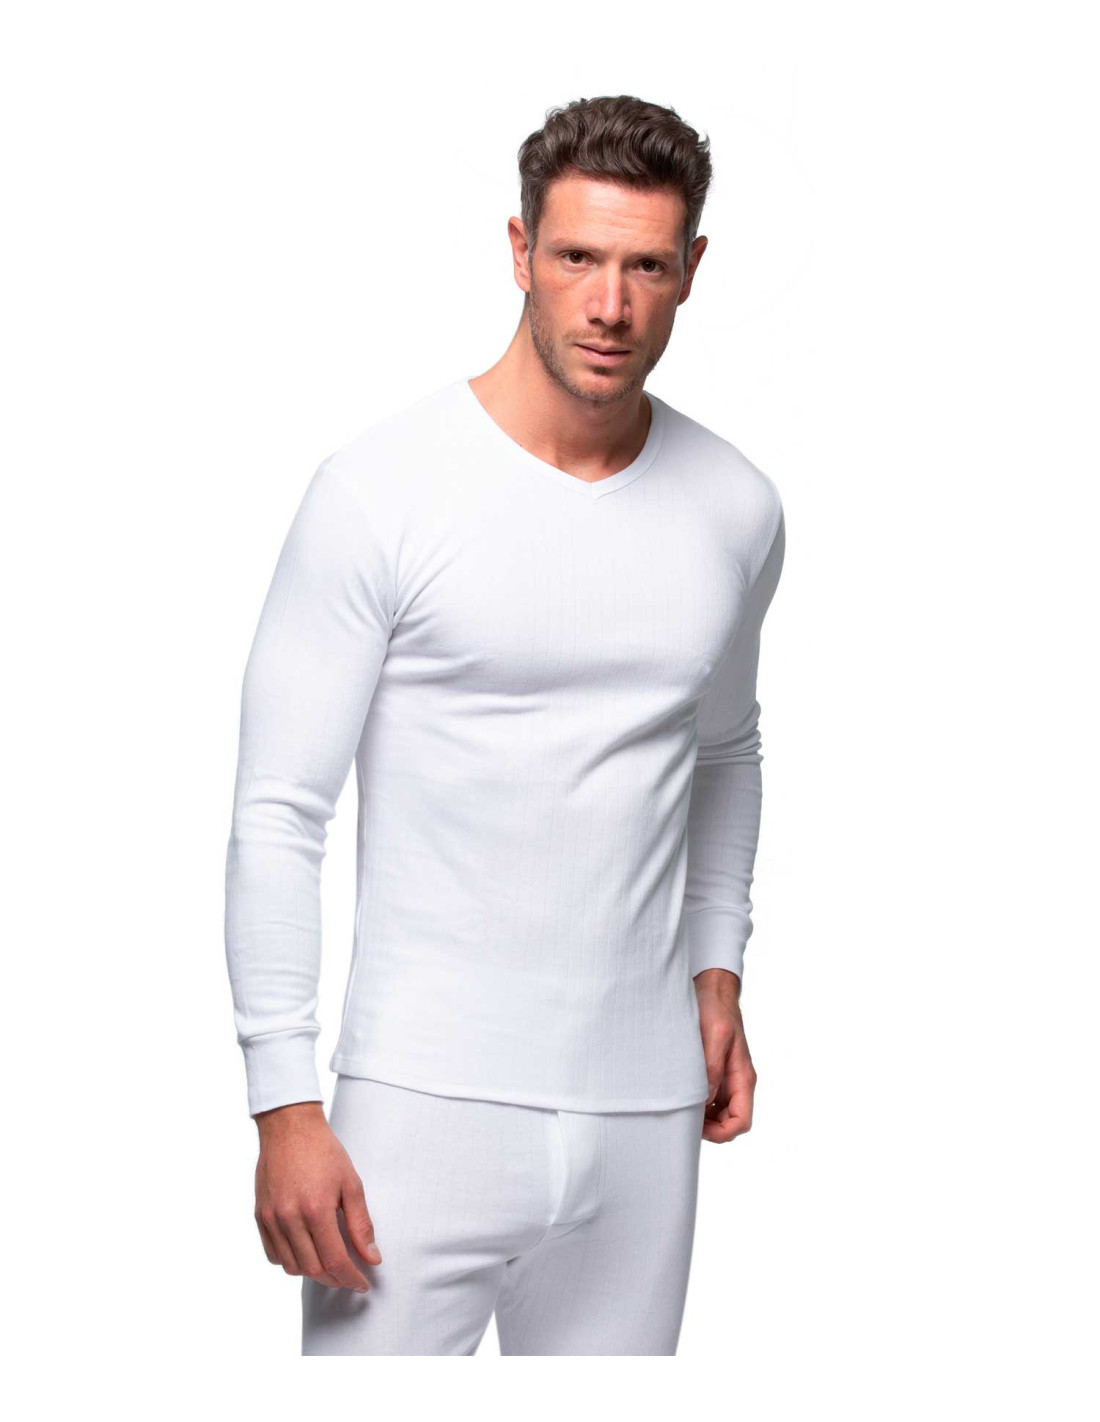 La Camiseta interior hombre manga corta y cuello de pico Fabio 8215 venta  online comprar al mejor precio